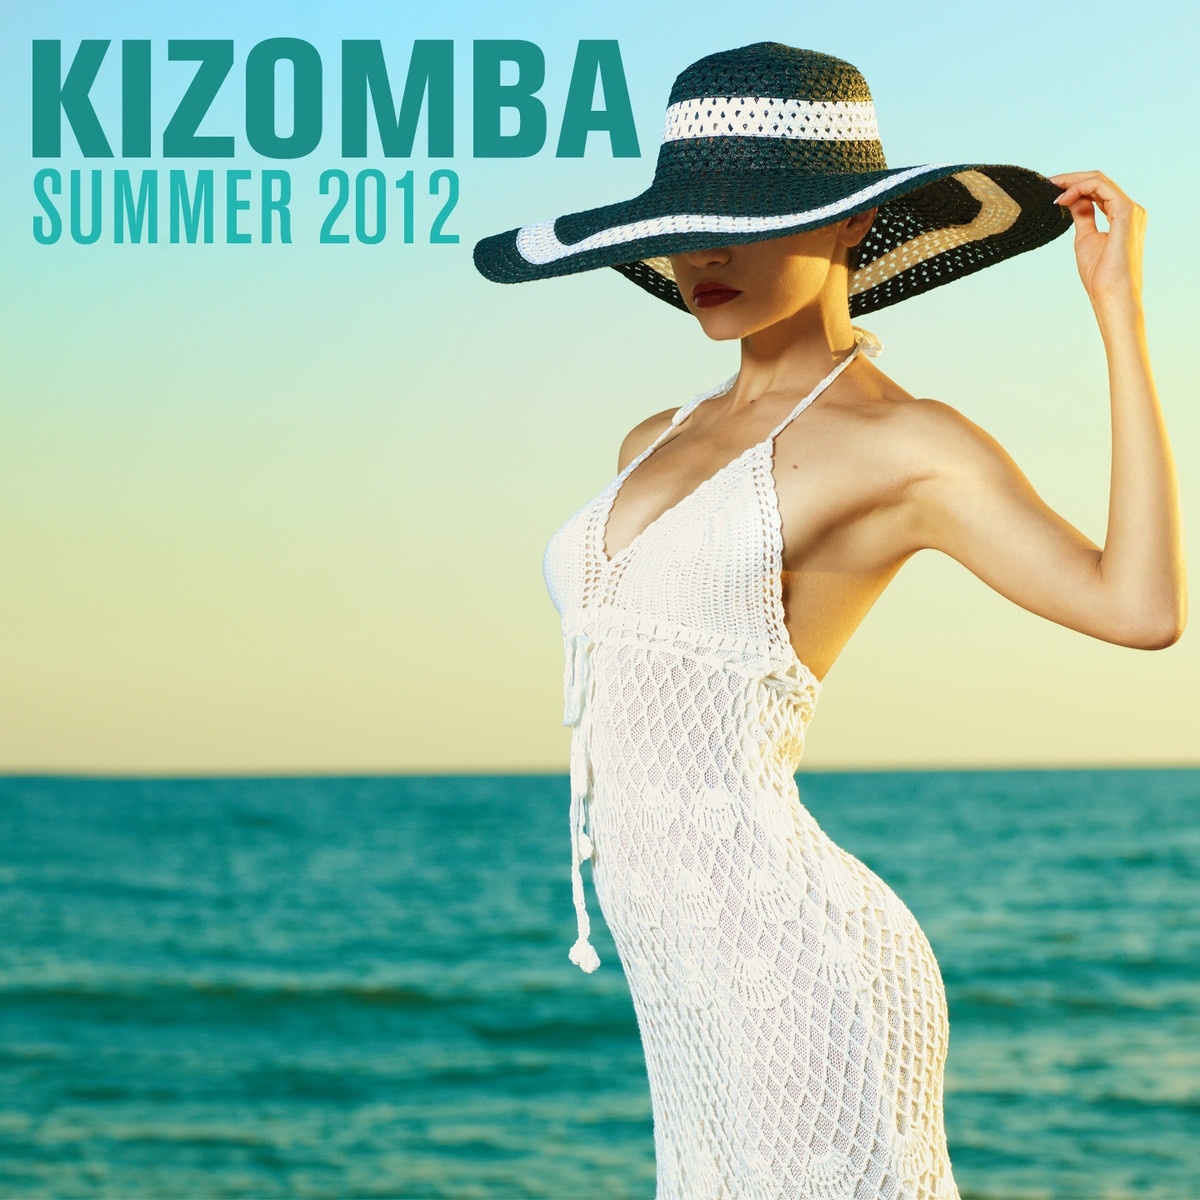 Kizomba Summer 2012